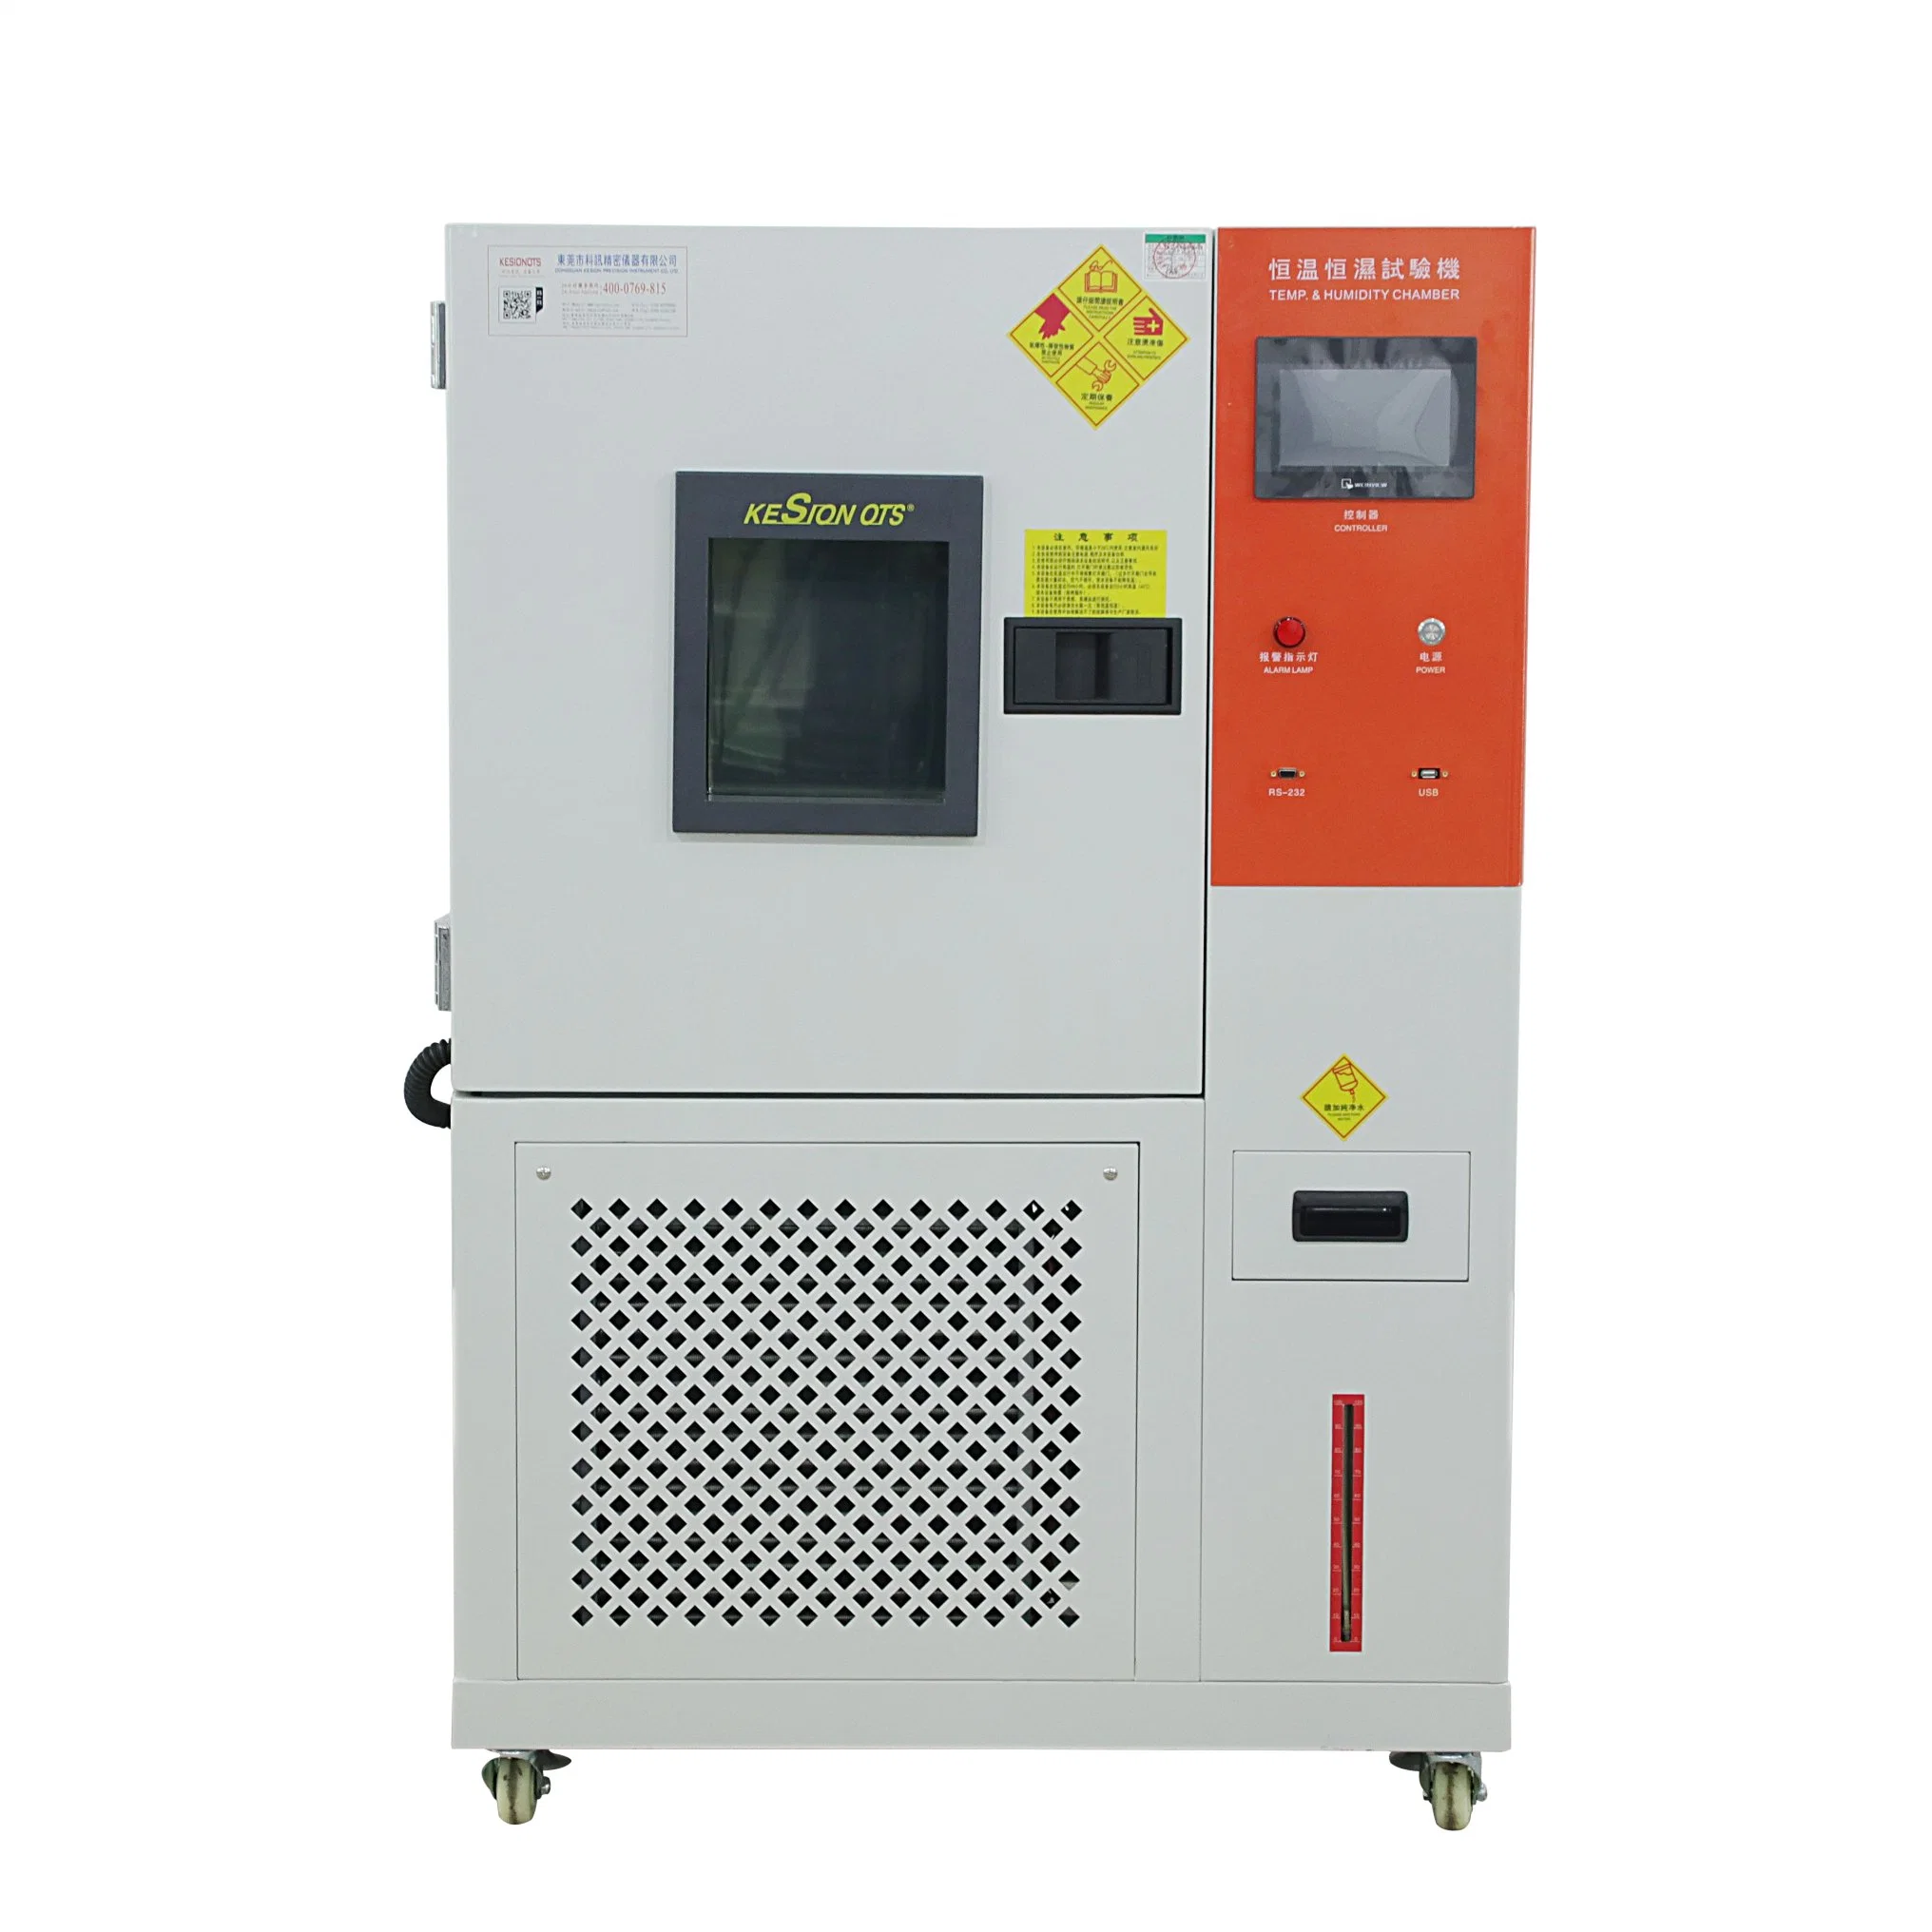 Testkammer für hohe und niedrige Temperaturen und Luftfeuchtigkeit/chemische Testgeräte / Handy-Testgerät